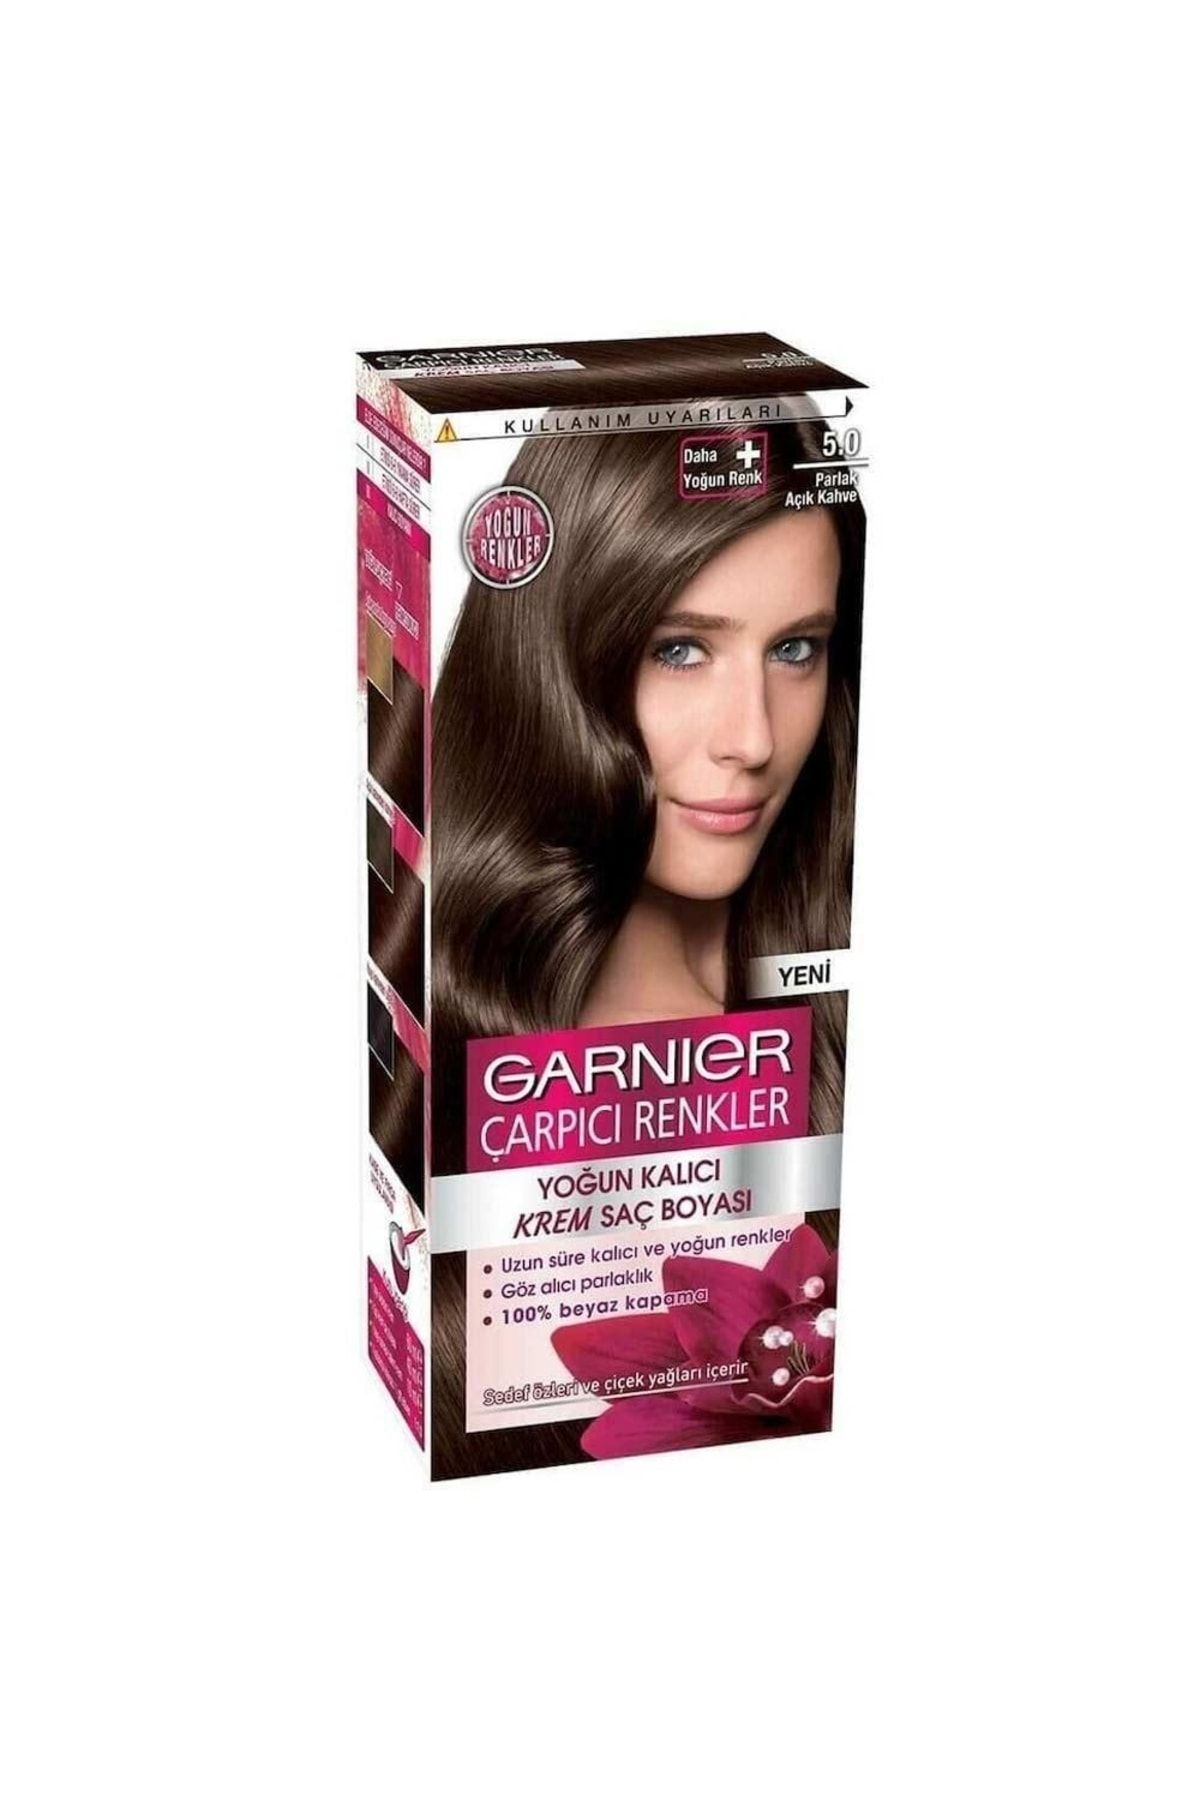 Garnier Çarpıcı Renkler Saç Boyası Parlak Açık Kahve No. 5,0